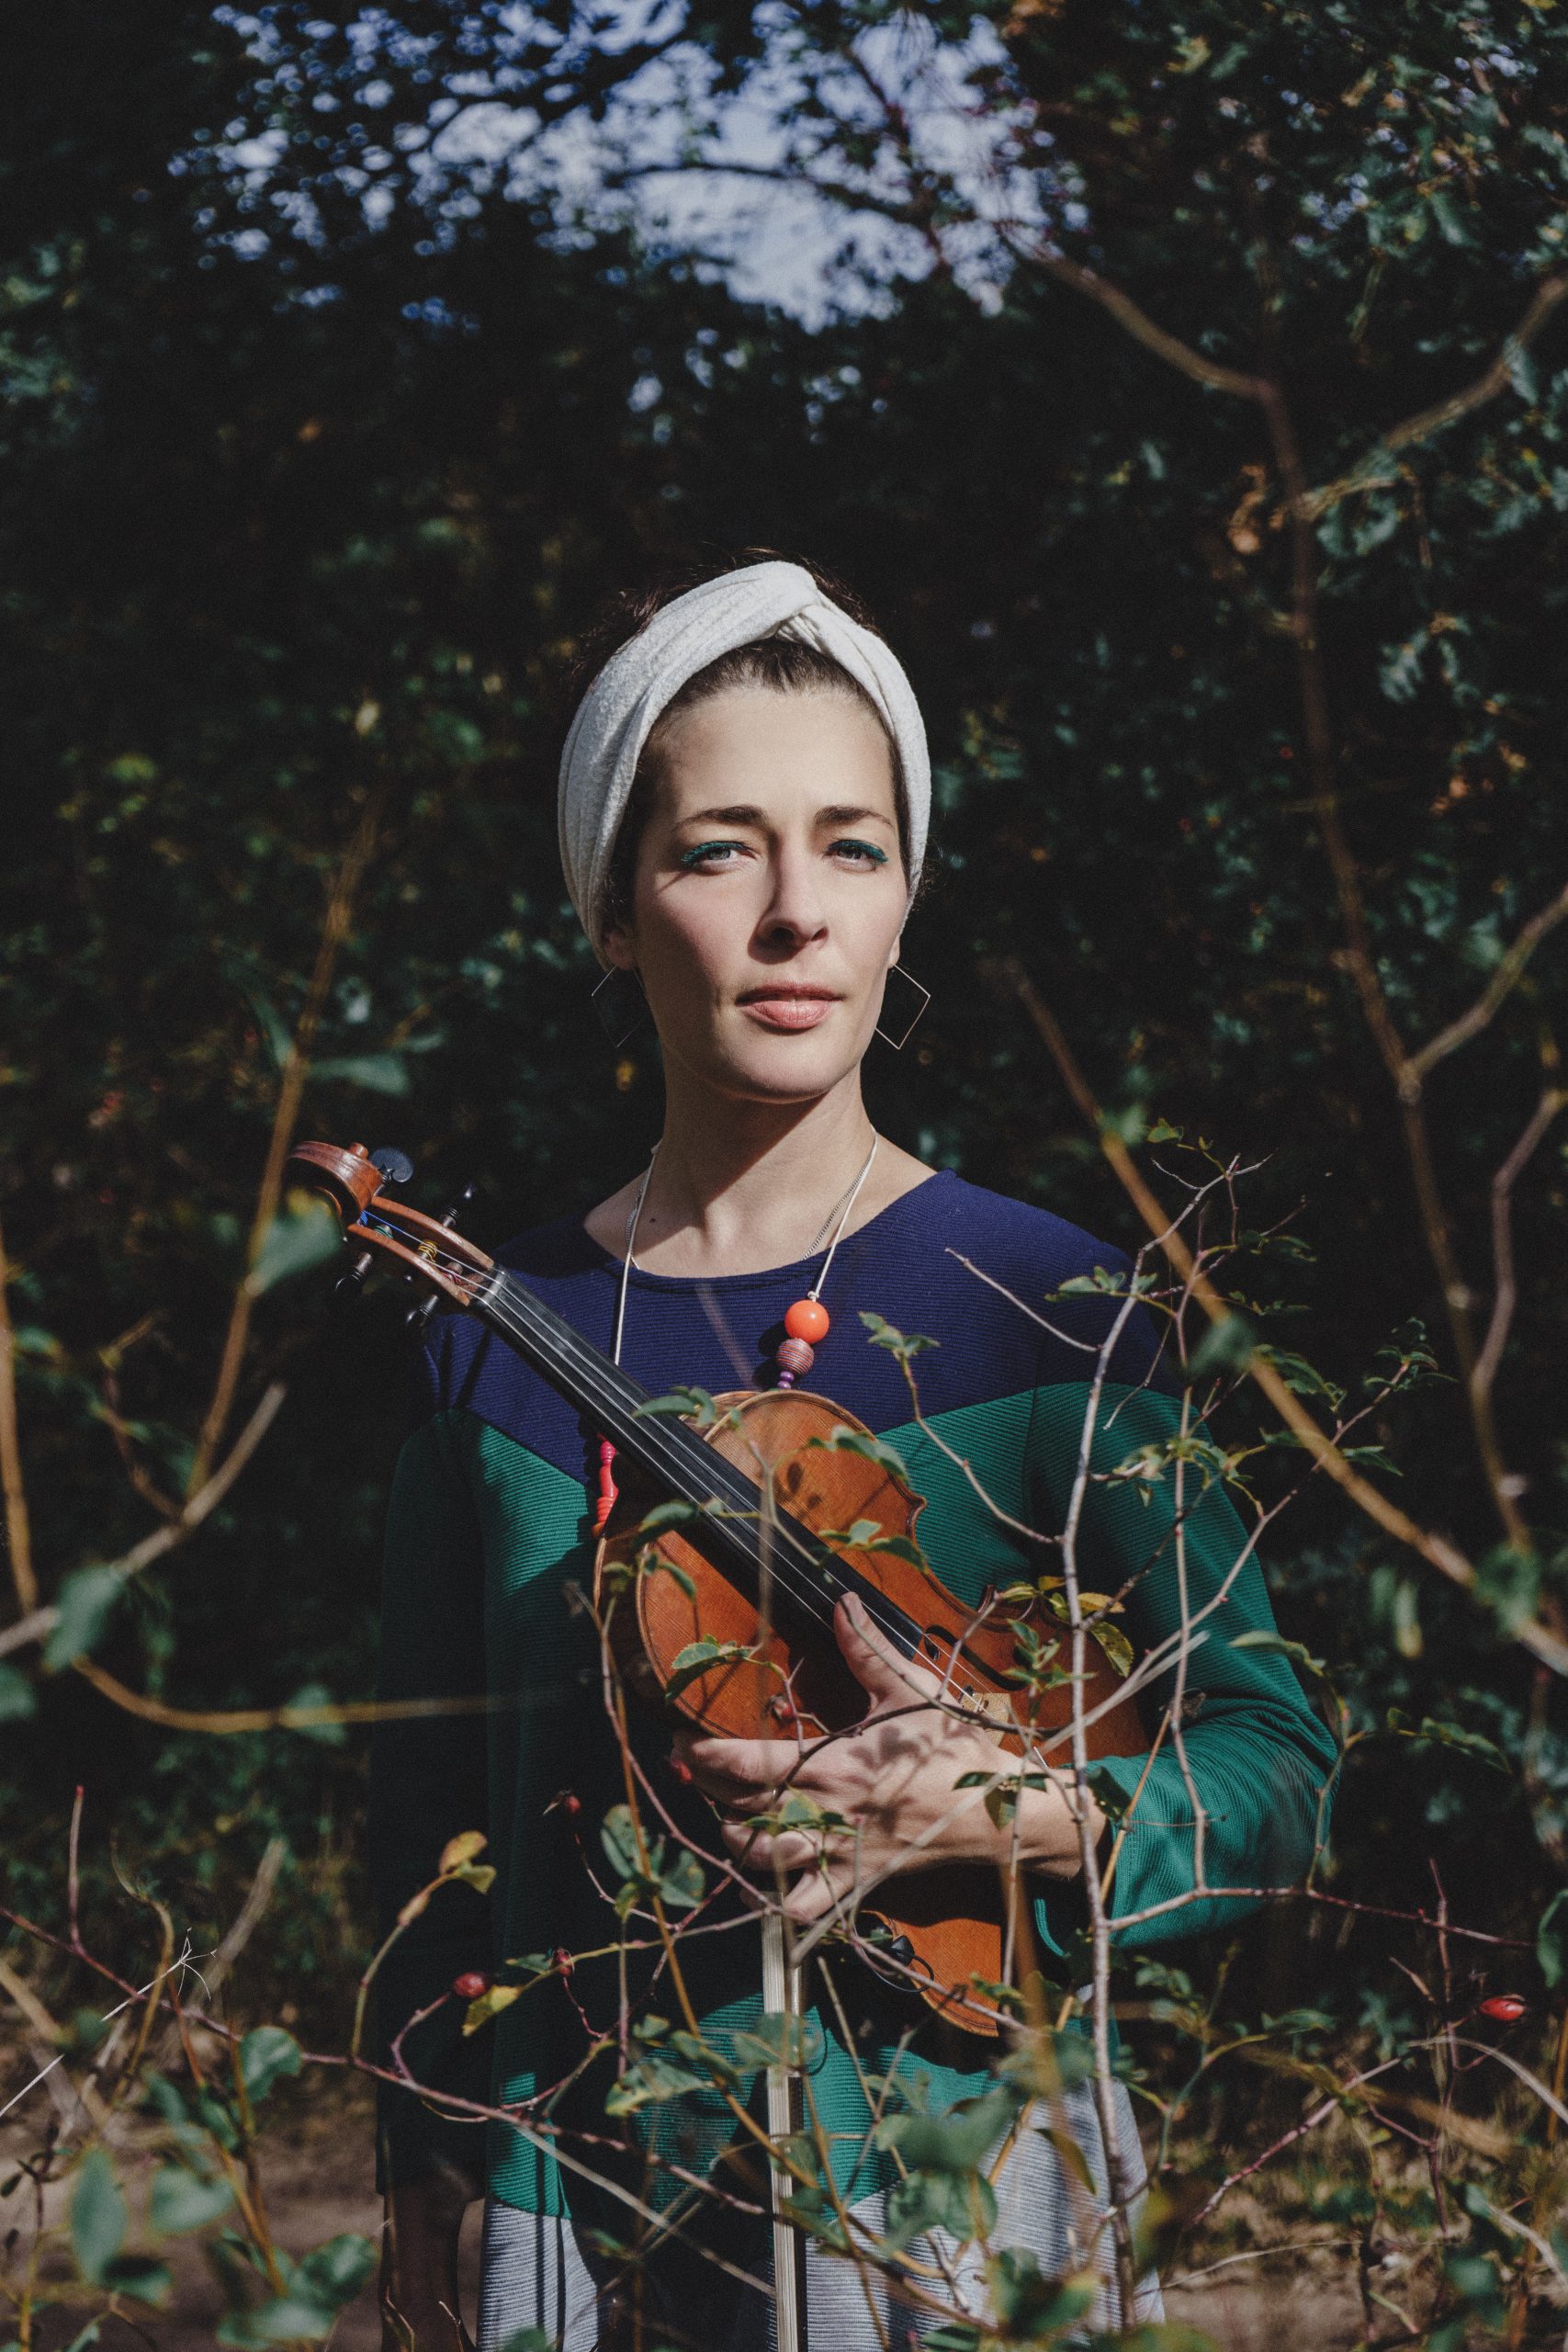 Blanca Altable con su fiddle o violín. Foto de Diego Beabesada